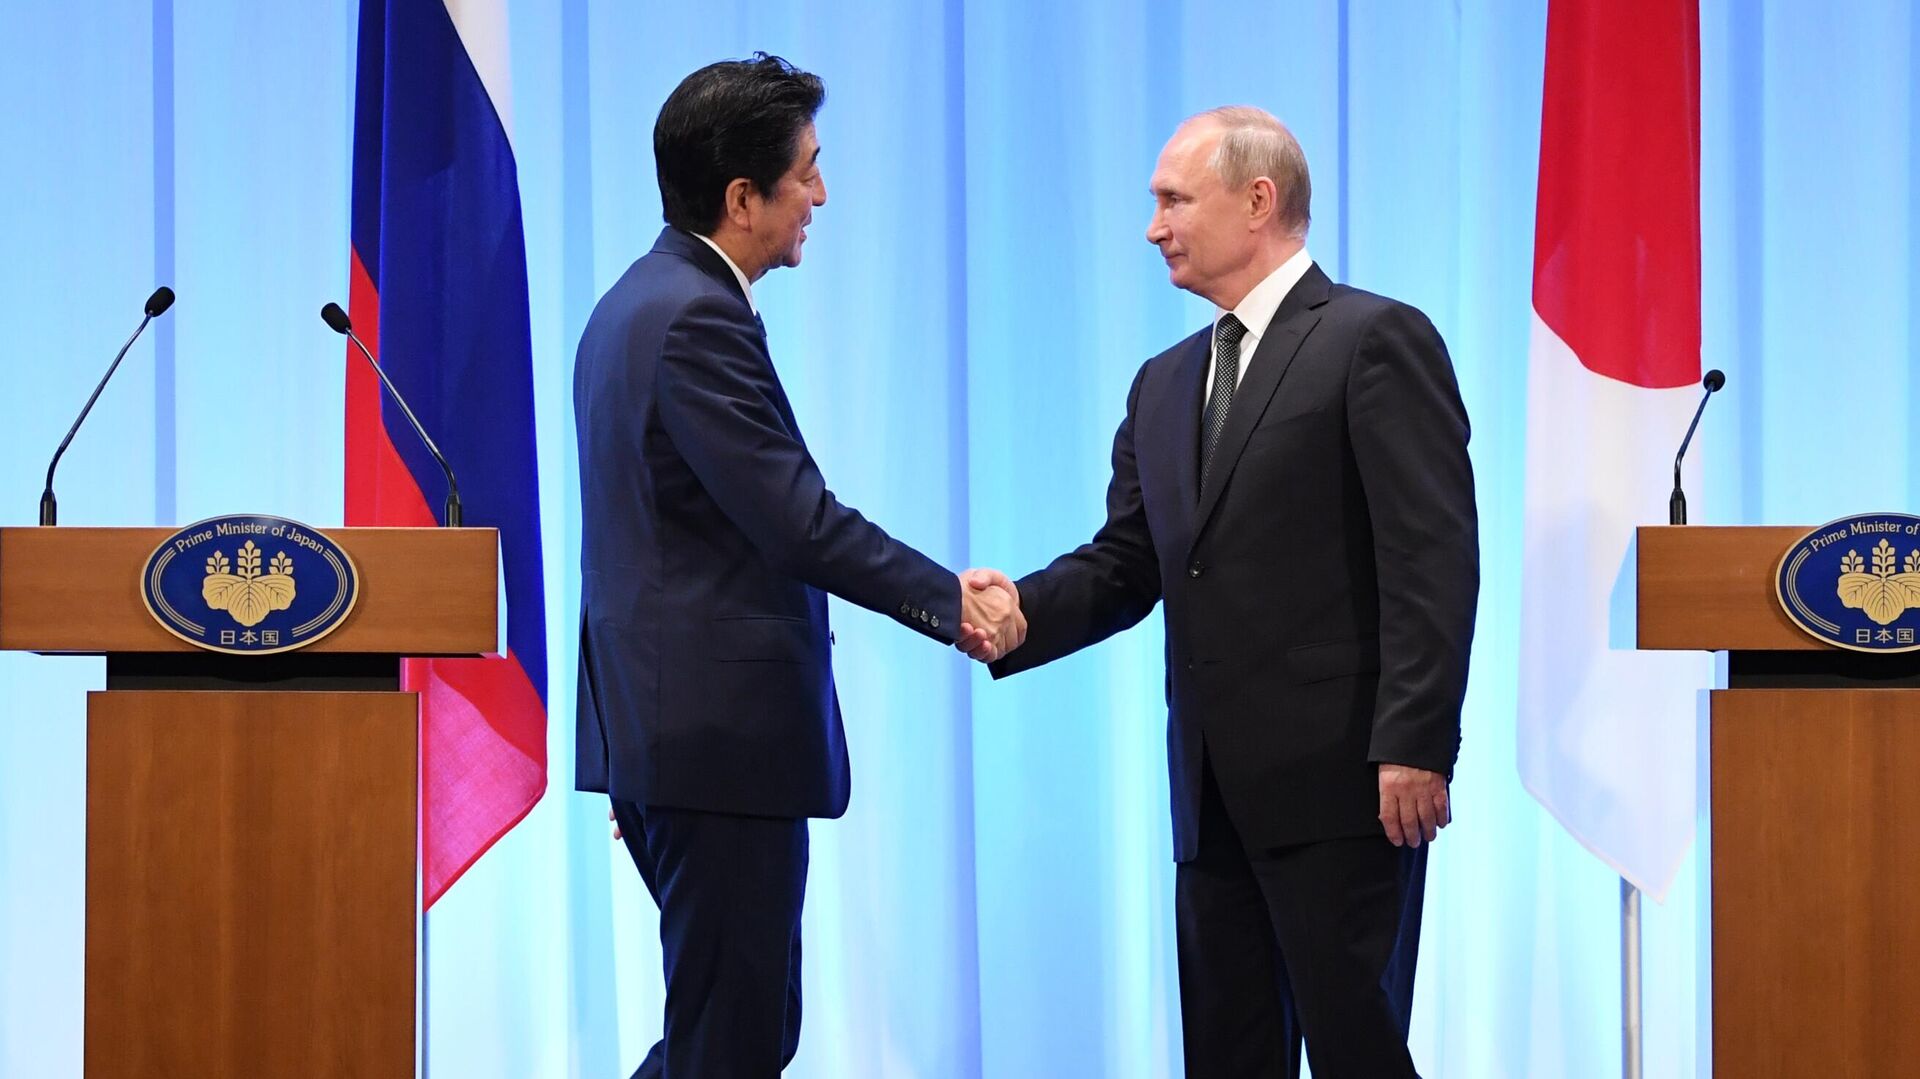 Президент РФ Владимир Путин и премьер-министр Японии Синдзо Абэ на совместной пресс-конференции по итогам встречи в Осаке. 29 июня 2019 - РИА Новости, 1920, 26.09.2020